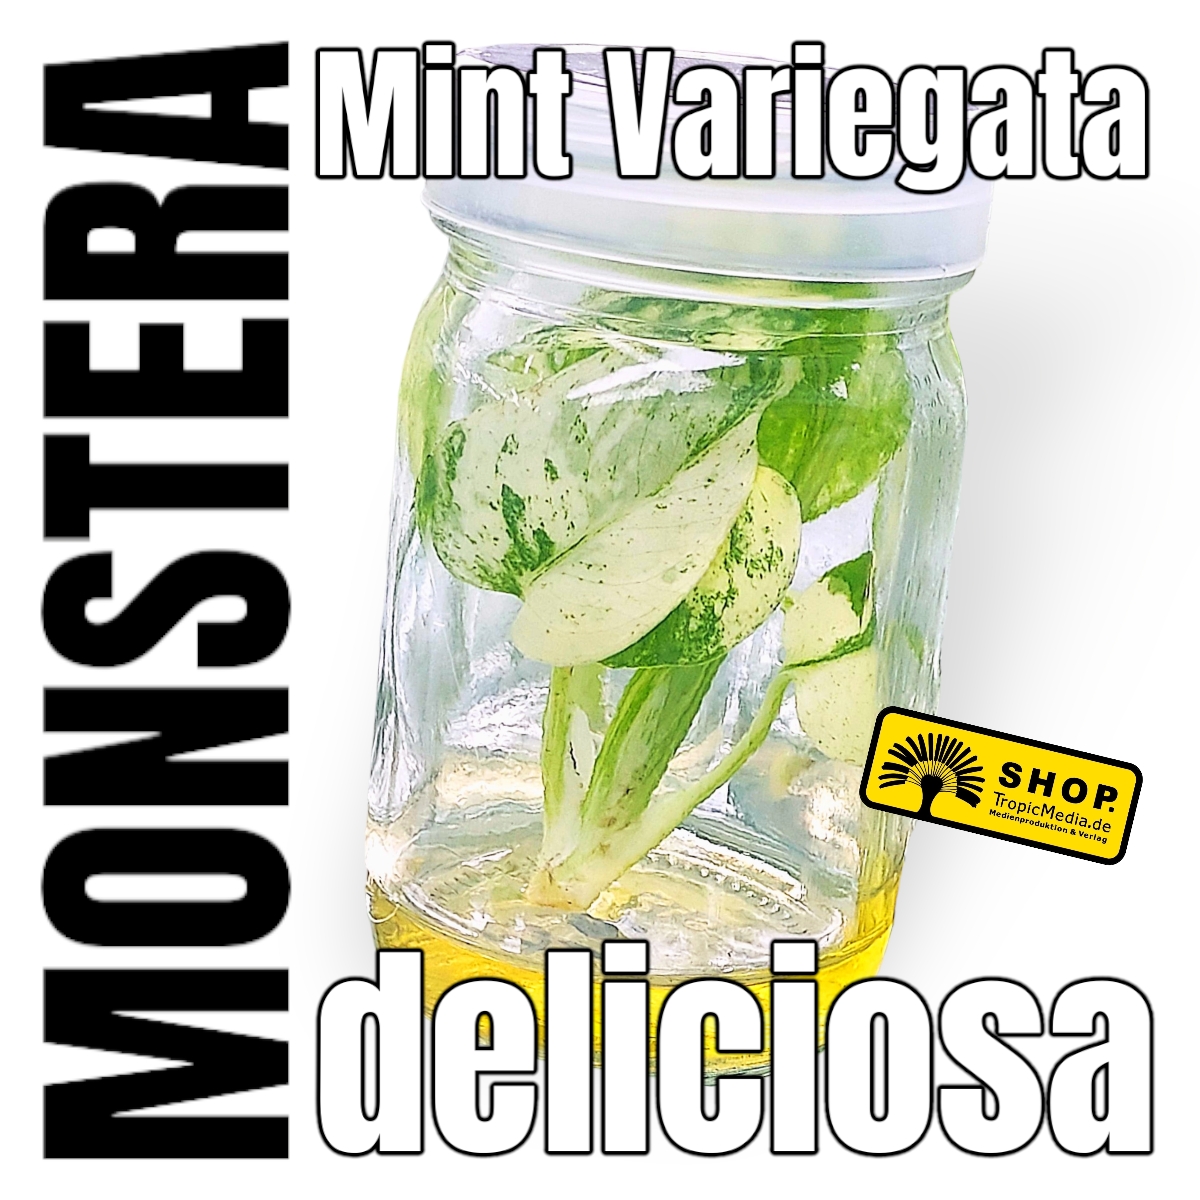 Monstera deliciosa Mint Variegata Tissue Culture (TC)